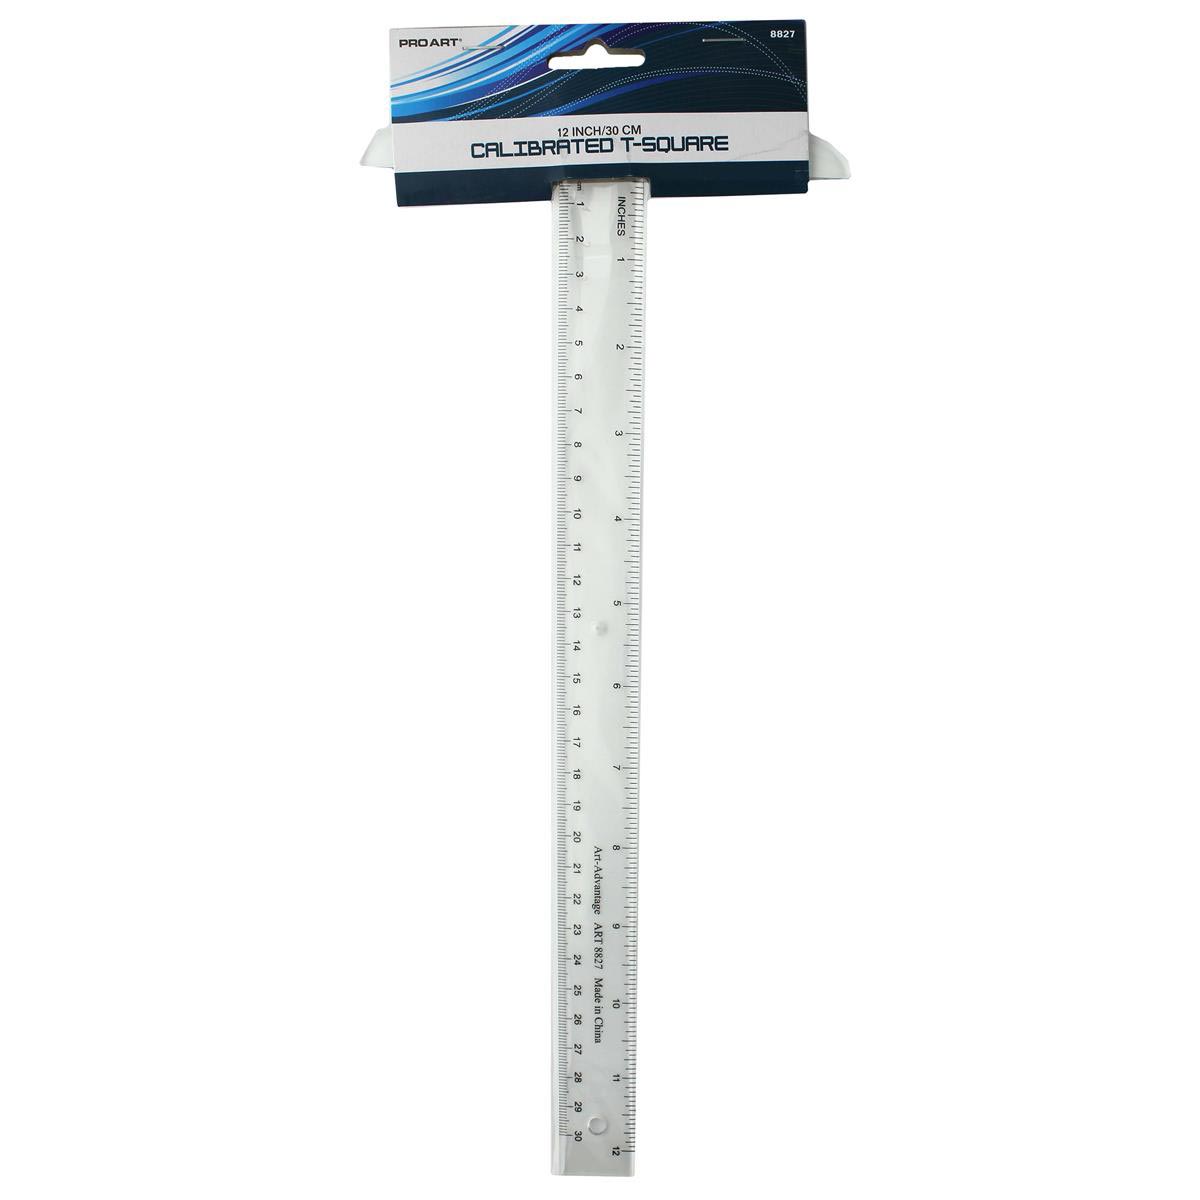 Pro Art Calibrated Transparent Plastic Ruler 12 inches (30 cm)